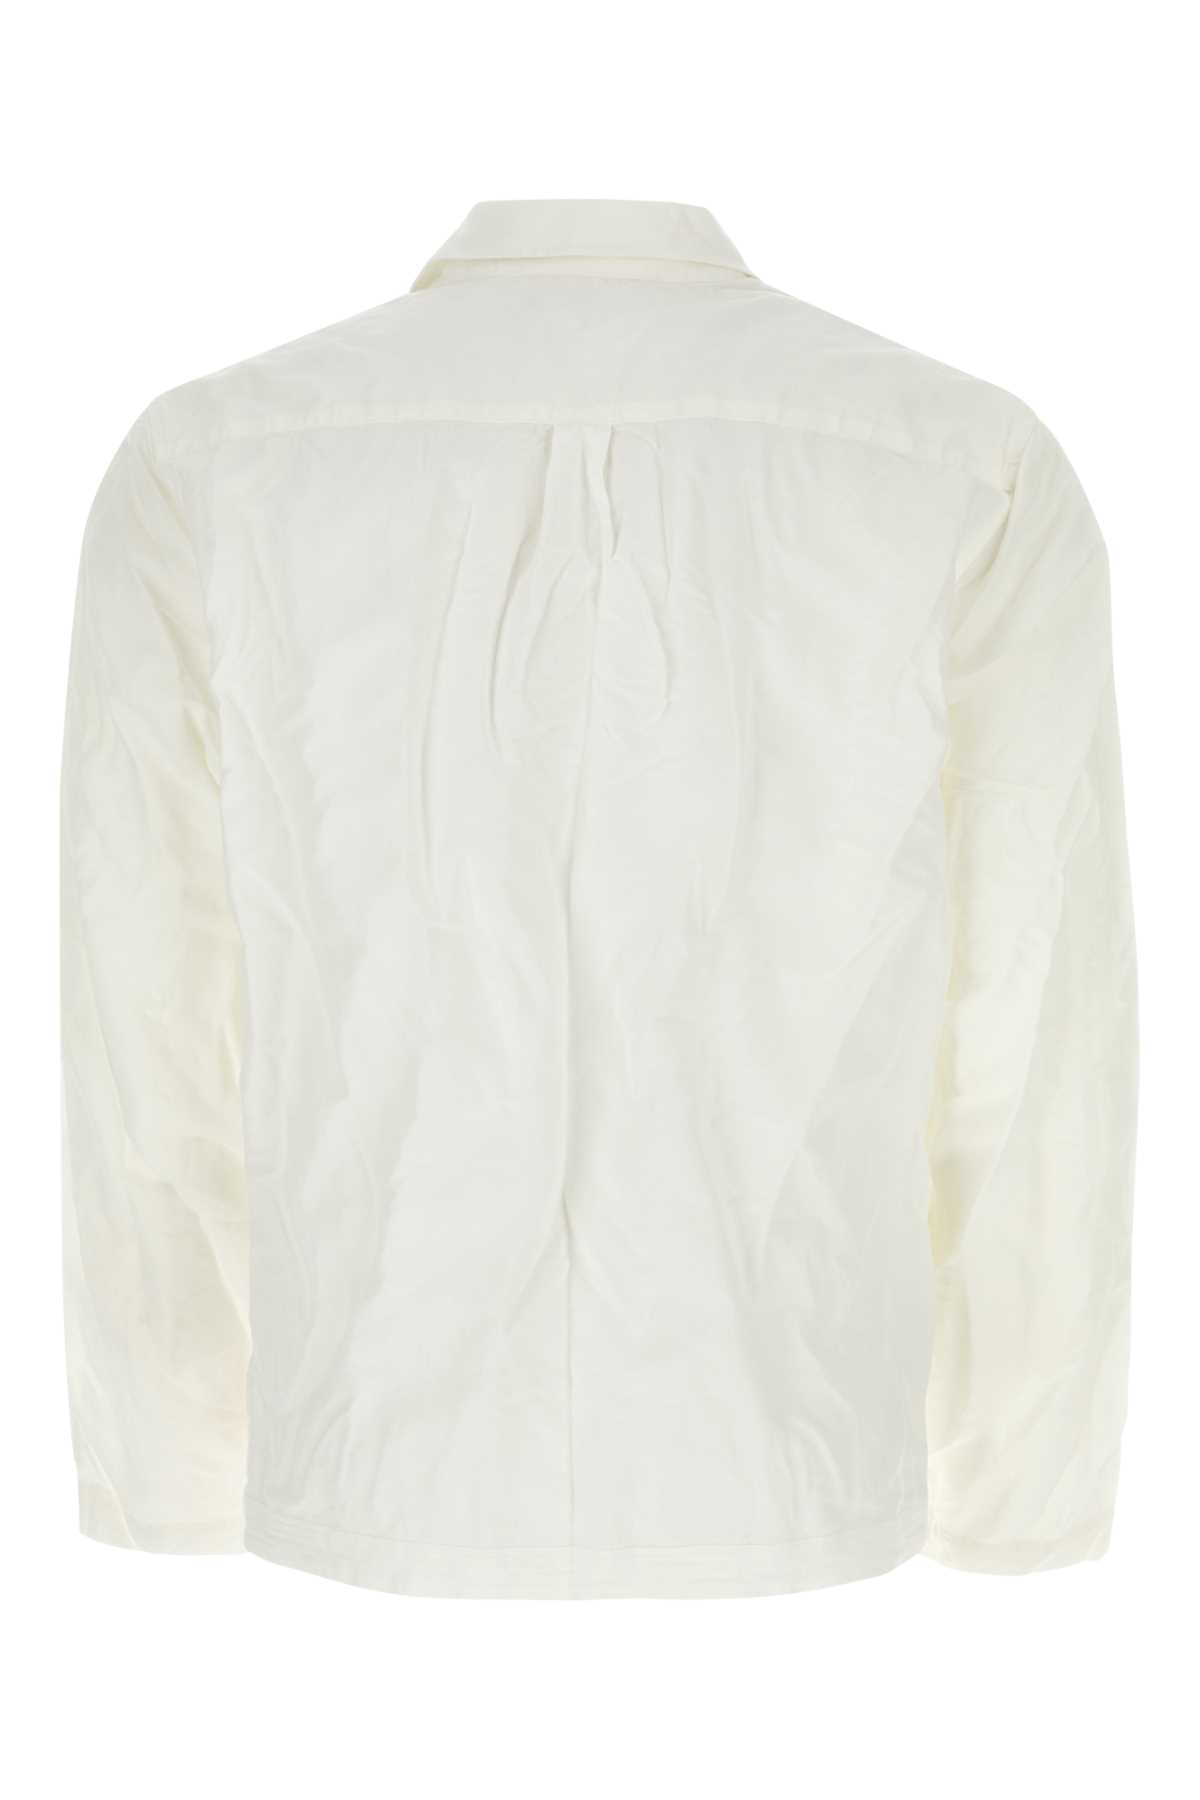 Orlebar Brown White Cotton Blend Roland Shirt In Seamist